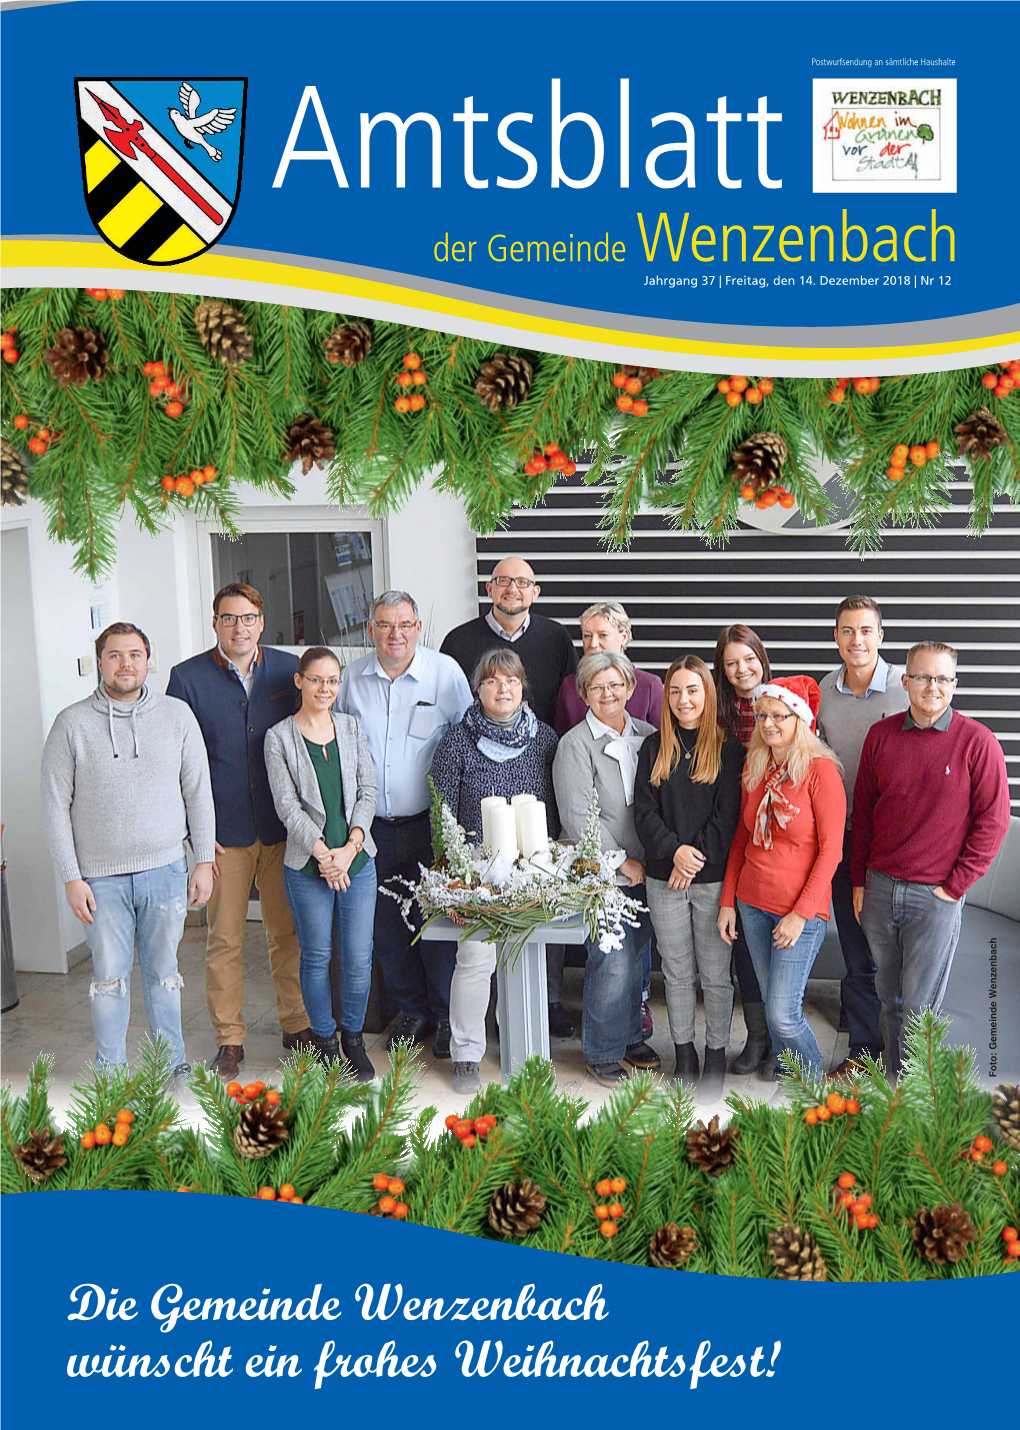 Die Gemeinde Wenzenbach Wünscht Ein Frohes Weihnachtsfest!